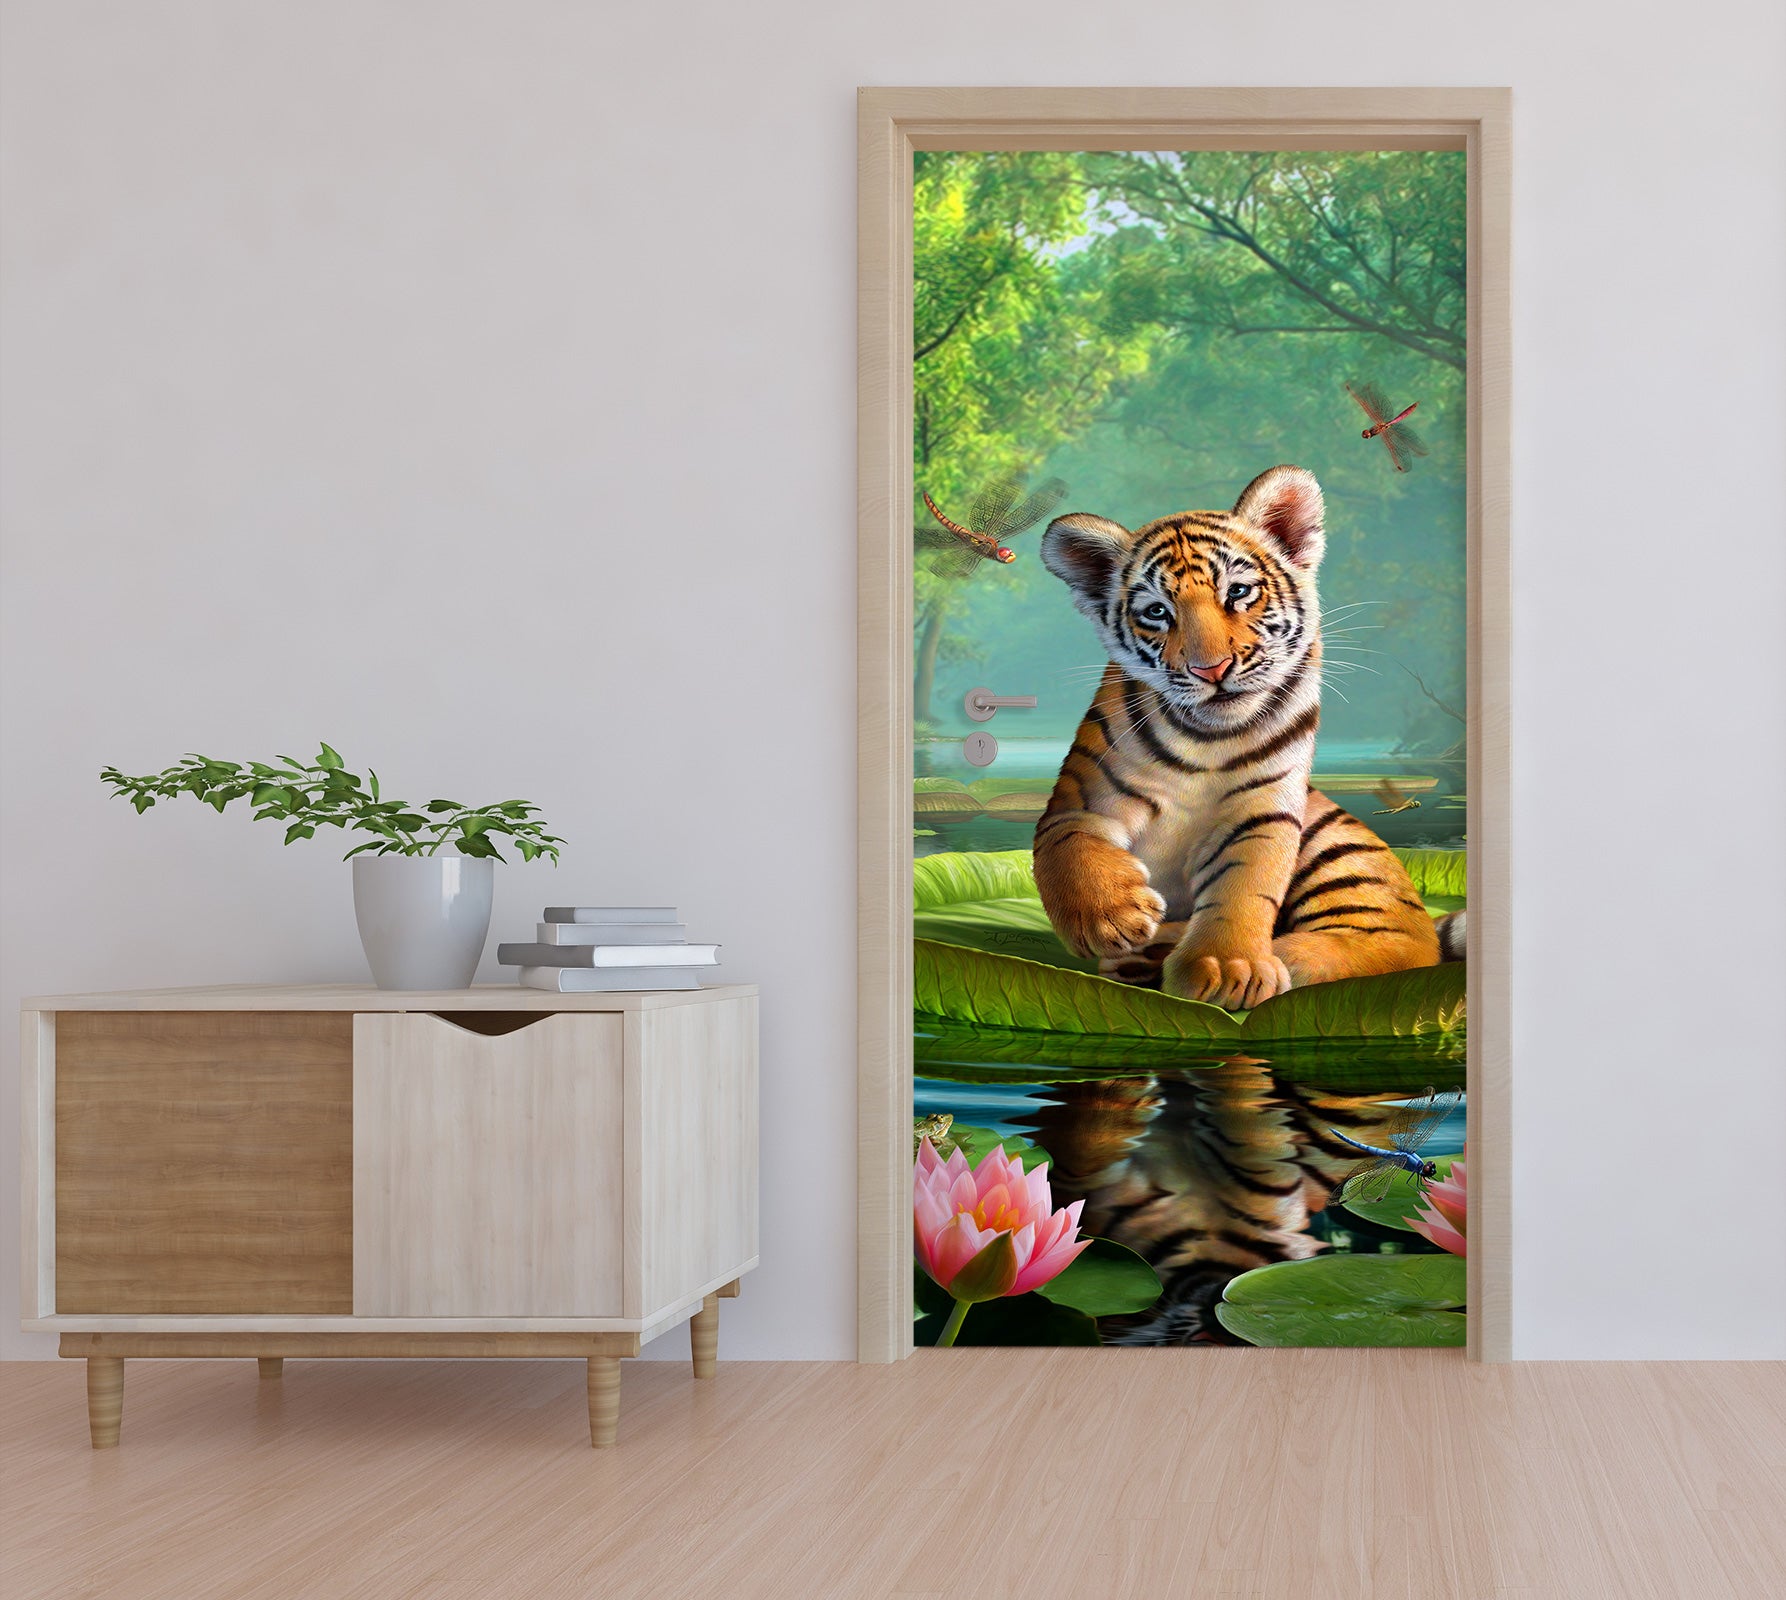 3D Tiger 112156 Jerry LoFaro Door Mural